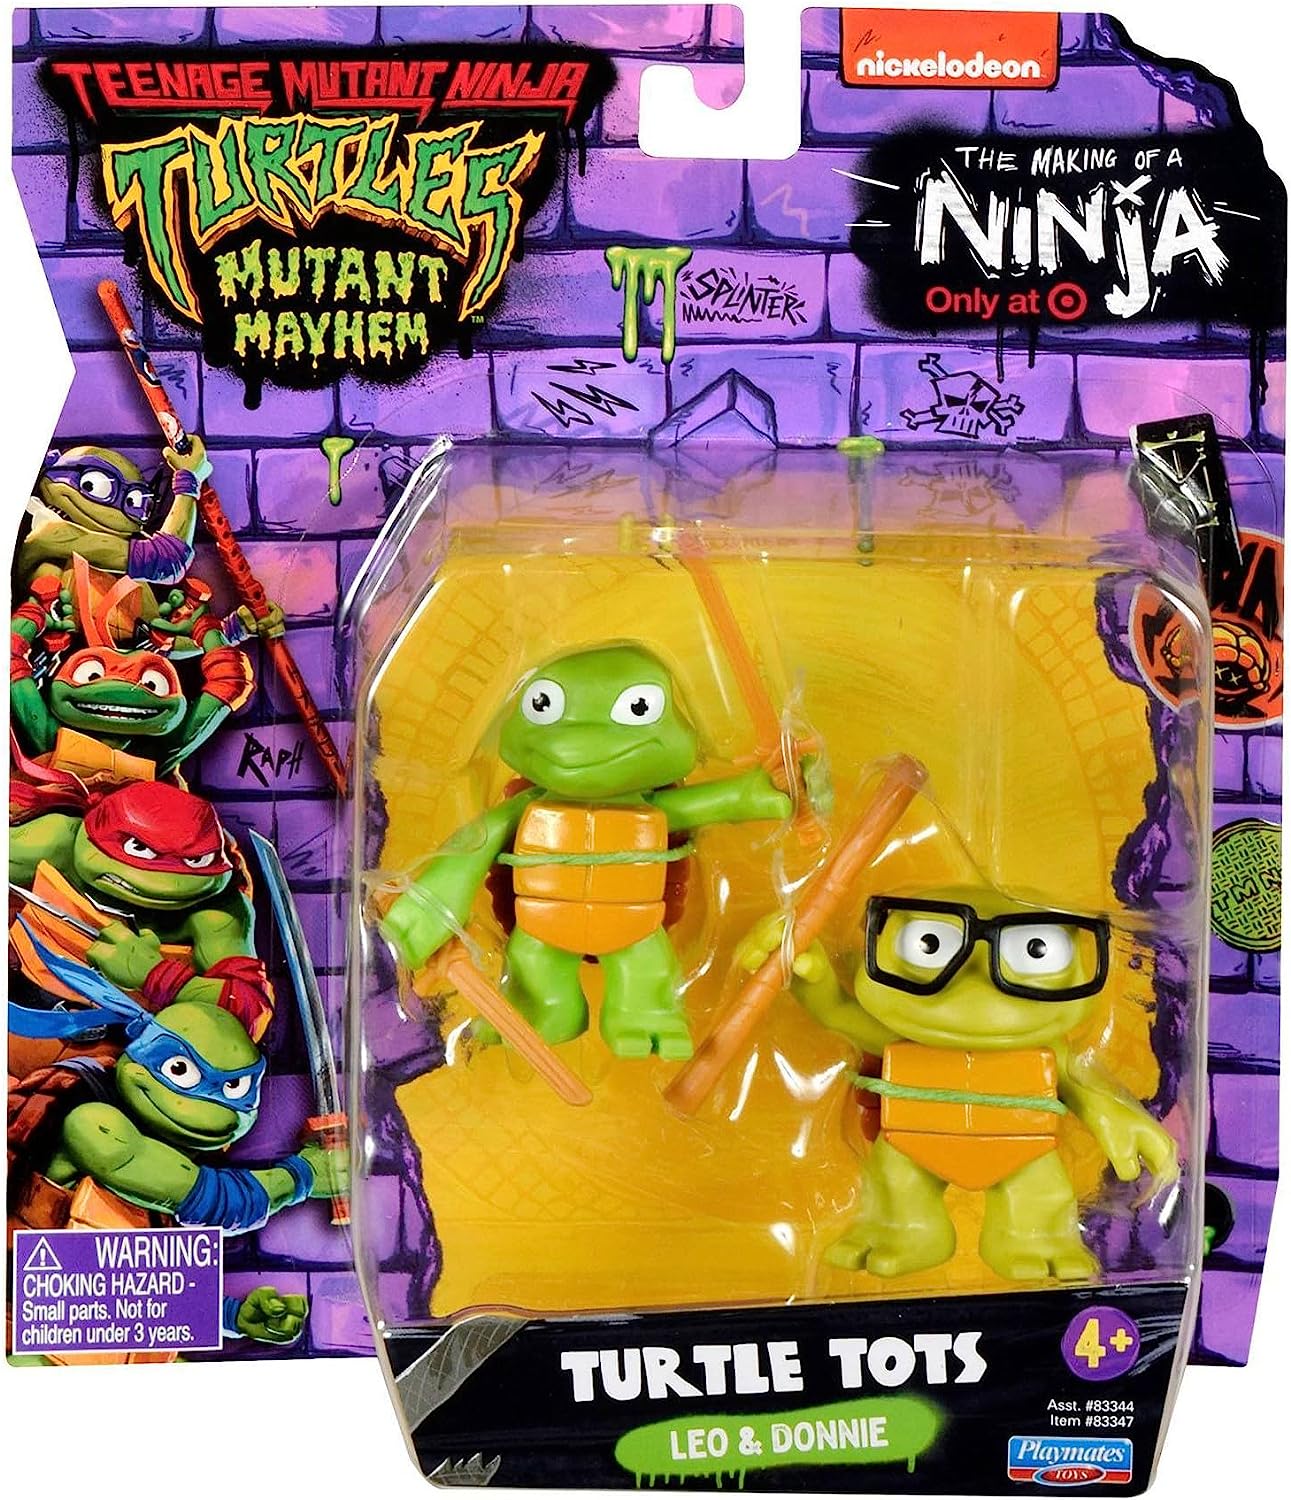 Turtles mutant mayhem. Teenage Mutant Ninja Turtles: Mutant Mayhem. Playmates Toys TMNT. TMNT Mutant Mayhem. Фигурки батл ТОТС.